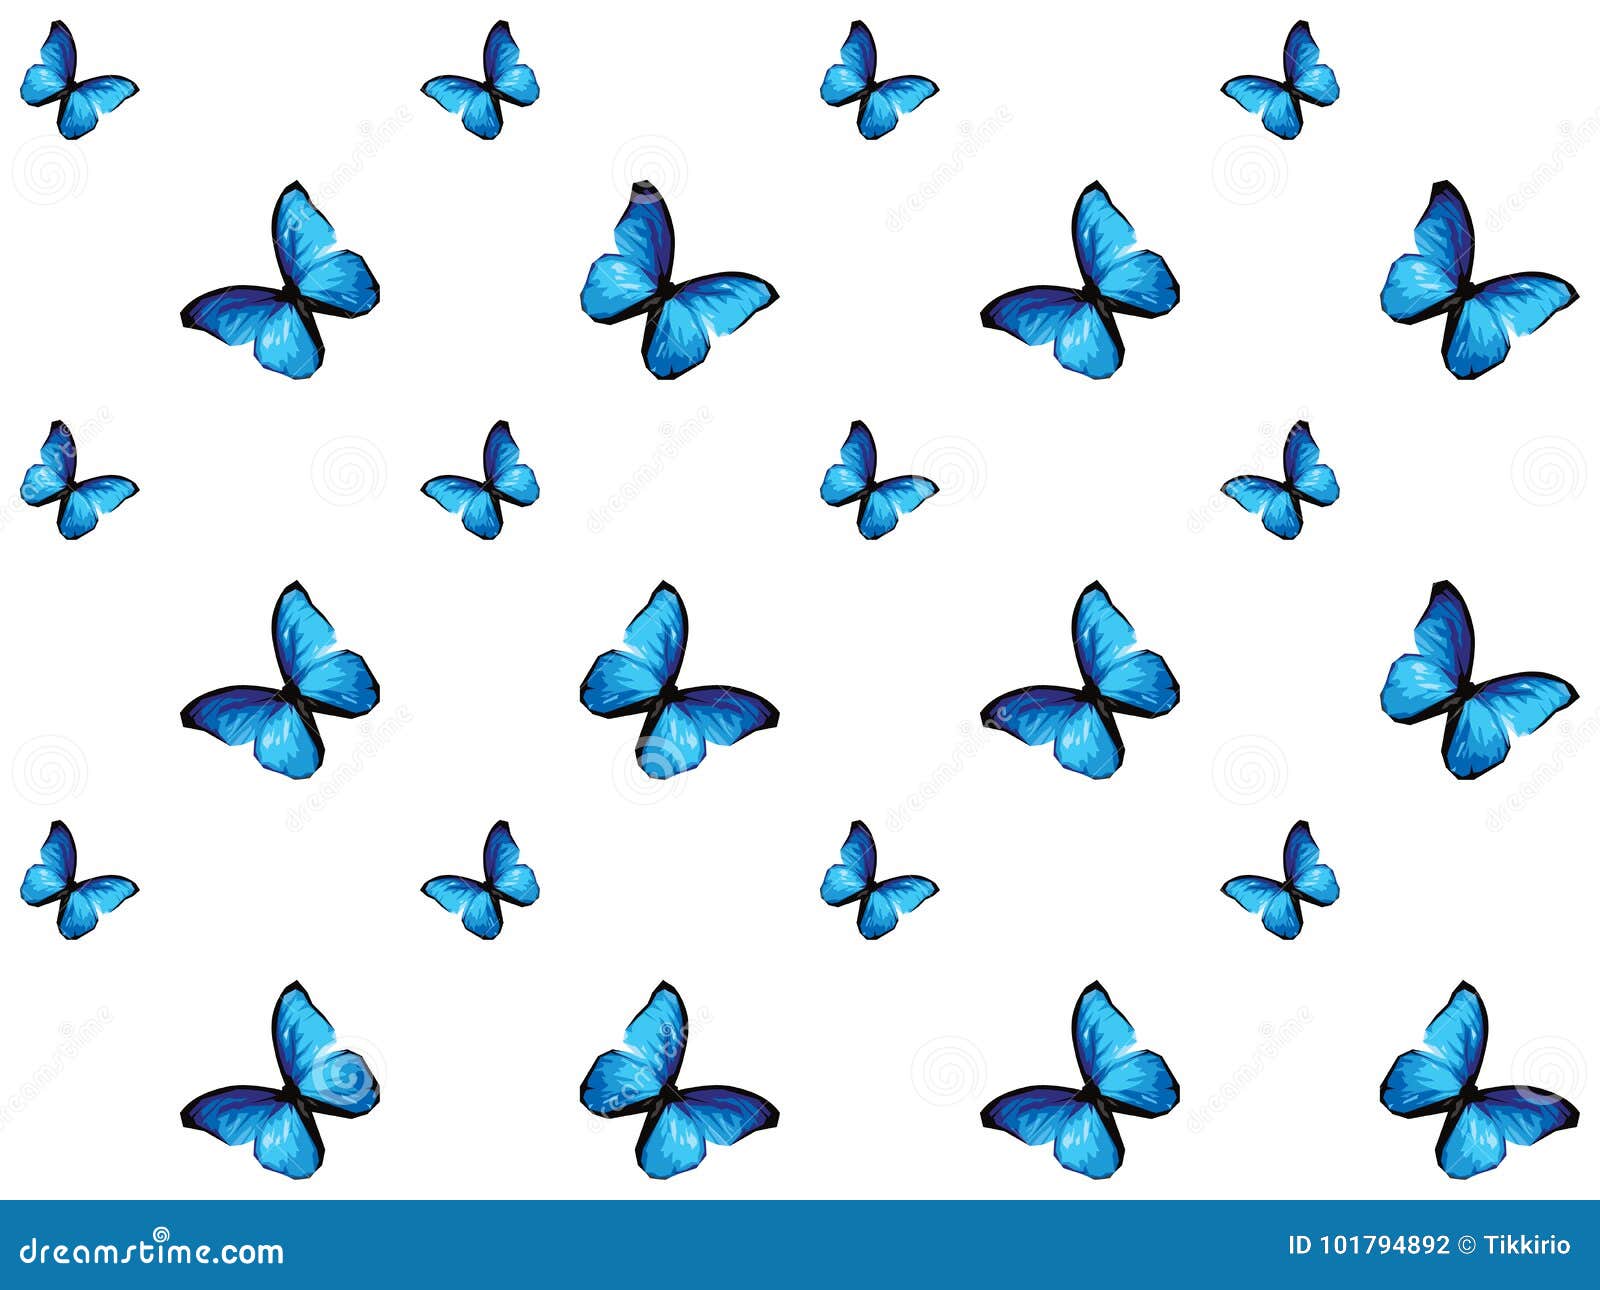 Bướm xanh là loài bướm tuyệt đẹp với màu sắc rực rỡ và đặc biệt là sự bắt mắt của màu xanh. Hãy xem hình ảnh bướm xanh để khám phá vẻ đẹp của loài bướm này.